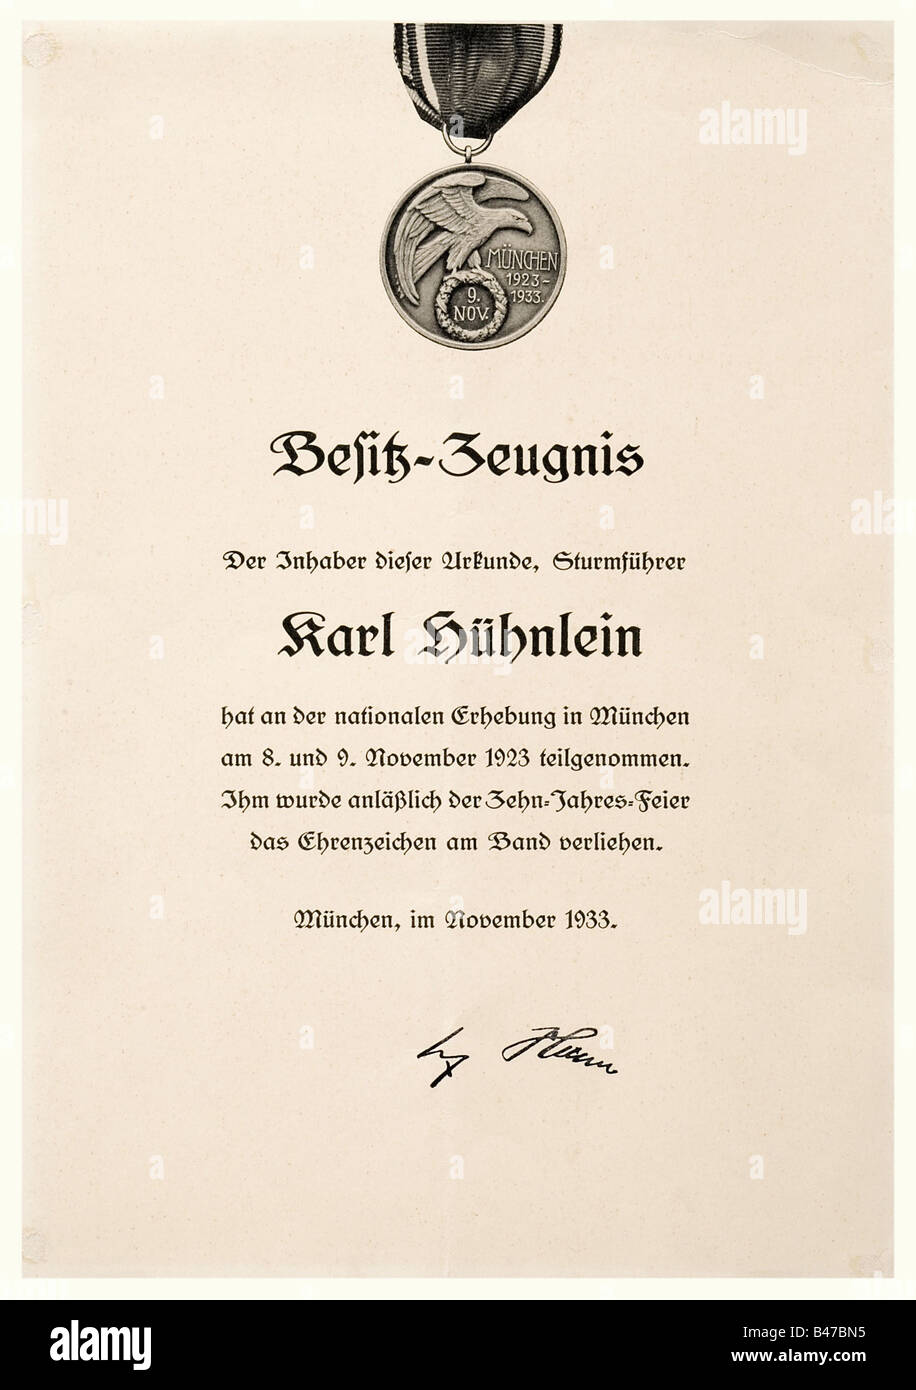 Ehrenzeichen vom 8./9. Novembre 1923 (Blood Order), premio documento, 1st tipo, 1933 stampato monochrome, single-sided certificato di premio su cartoncino sottile, giallastro, 22.2 x 31.7 cm, in alto è una rappresentazione fotografica della medaglia assegnata a Karl Hühnlein (numero di registrazione 407), del novembre 1933, facsimile firma di Hitler in basso. Curvatura piccola, tracce di colla da un montaggio precedente. Incluso è un certificato di riconoscimento per la Croce D'Onore per i combattenti anteriori, 1935. Karl Hühnlein (n. 10 maggio 1900), nipote del leader NSKK Adolf Hühnlein, era a, Foto Stock